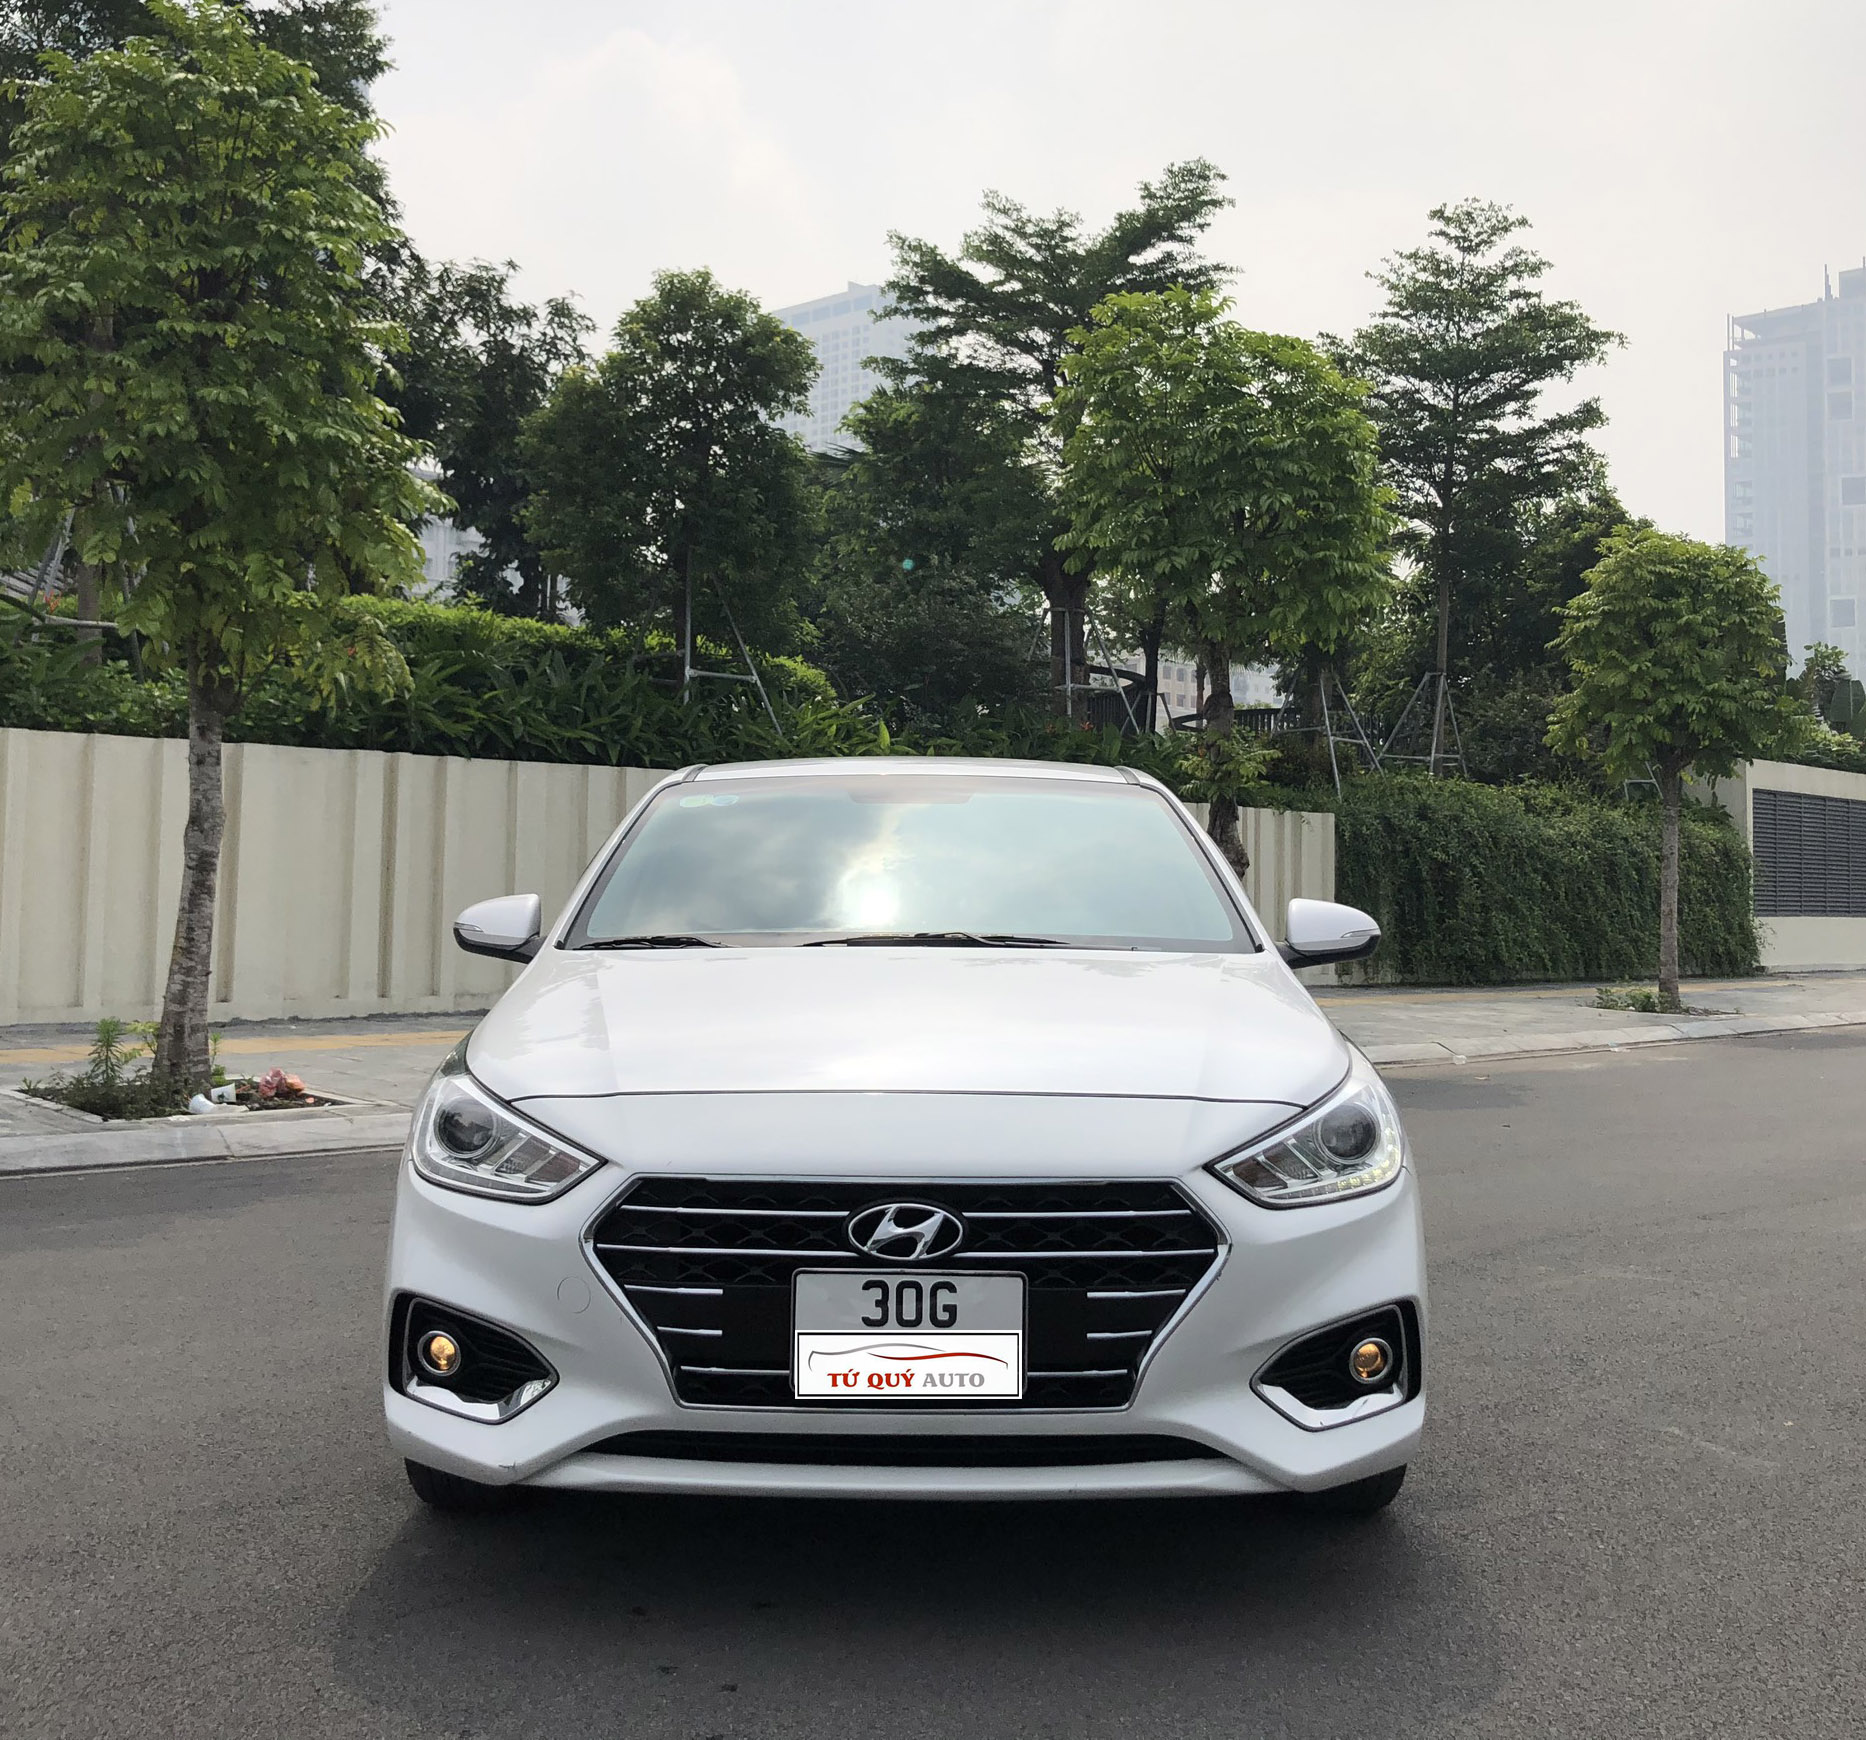 Đánh giá xe Hyundai Accent 2019 thế hệ mới vừa ra mắt tại Việt Nam   MuasamXecom